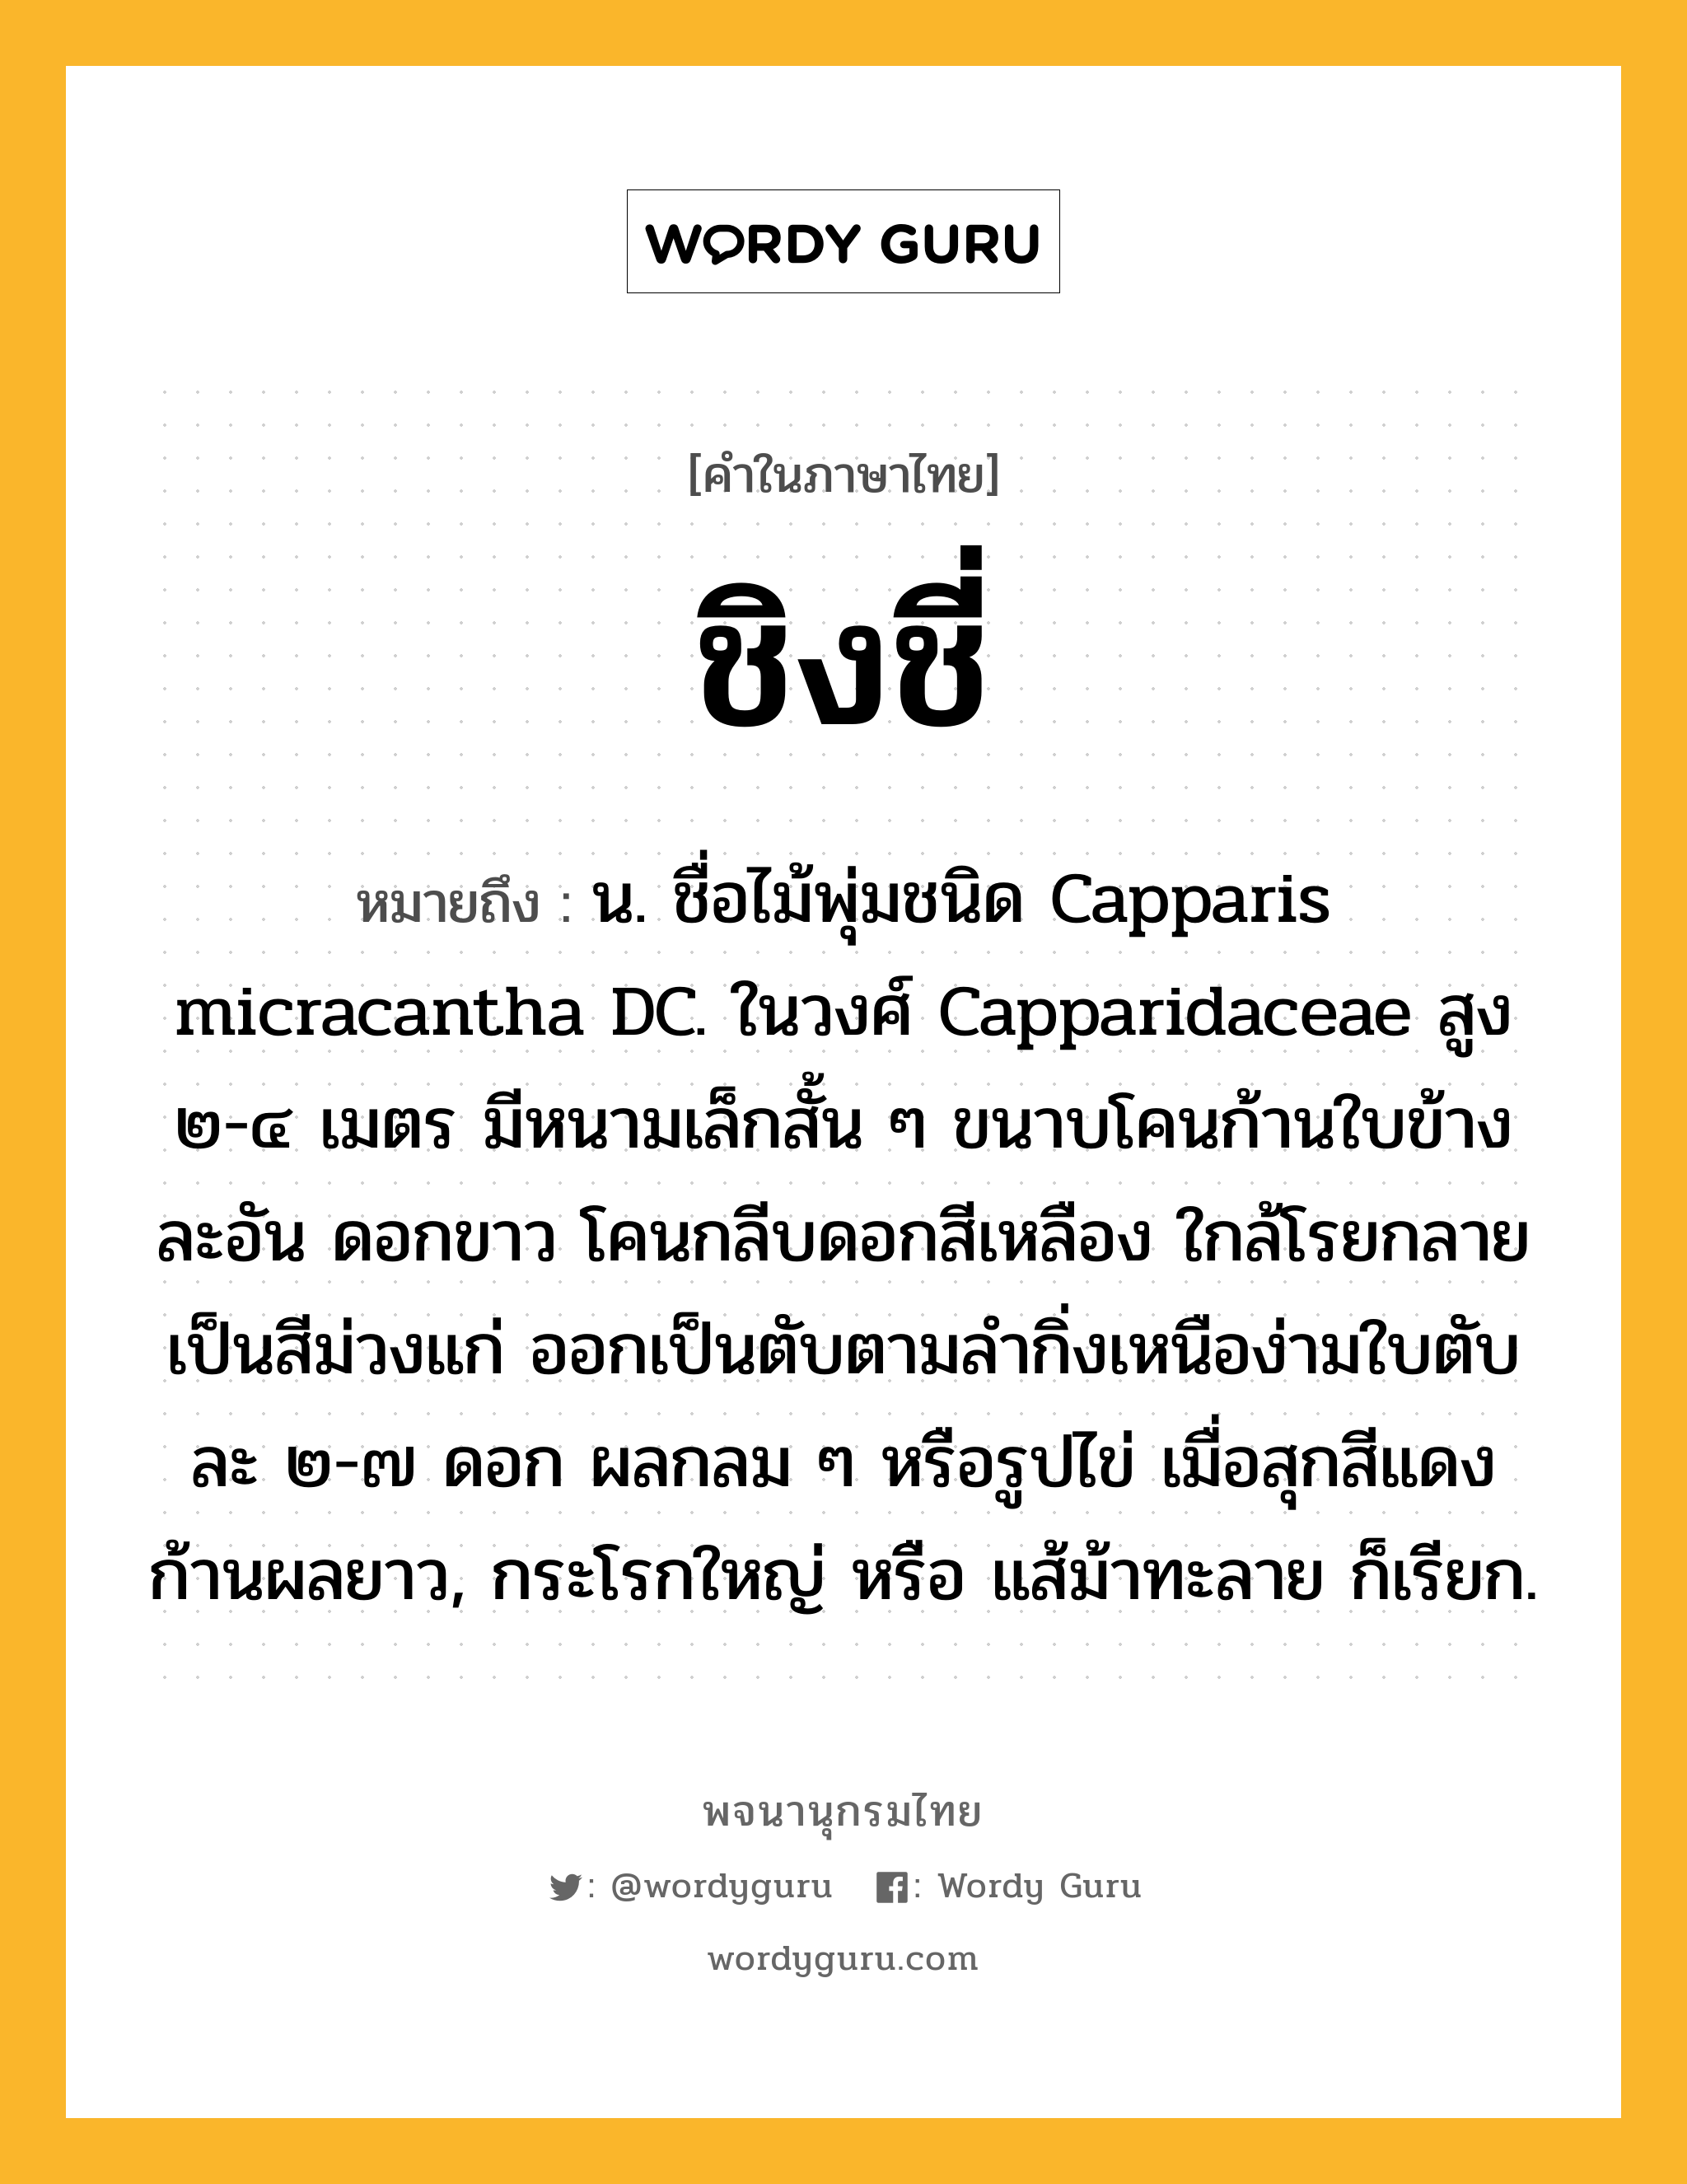 ชิงชี่ ความหมาย หมายถึงอะไร?, คำในภาษาไทย ชิงชี่ หมายถึง น. ชื่อไม้พุ่มชนิด Capparis micracantha DC. ในวงศ์ Capparidaceae สูง ๒-๔ เมตร มีหนามเล็กสั้น ๆ ขนาบโคนก้านใบข้างละอัน ดอกขาว โคนกลีบดอกสีเหลือง ใกล้โรยกลายเป็นสีม่วงแก่ ออกเป็นตับตามลํากิ่งเหนือง่ามใบตับละ ๒-๗ ดอก ผลกลม ๆ หรือรูปไข่ เมื่อสุกสีแดง ก้านผลยาว, กระโรกใหญ่ หรือ แส้ม้าทะลาย ก็เรียก.